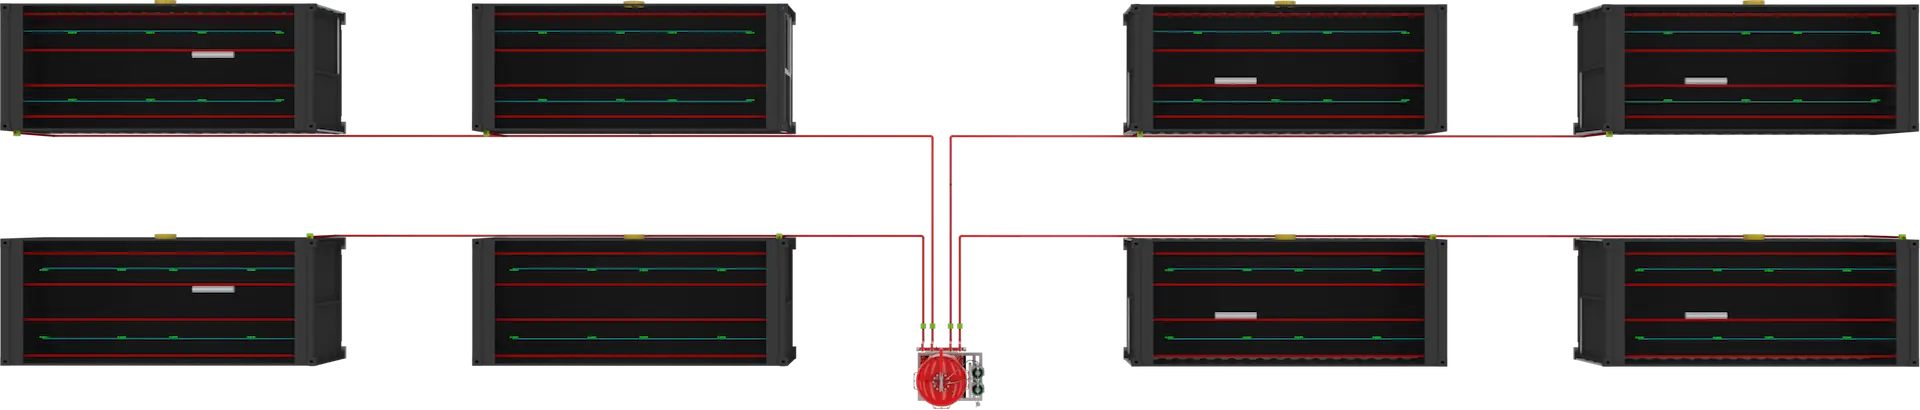 sistema de supressão de incêndio por armazenamento de energia - T-REX